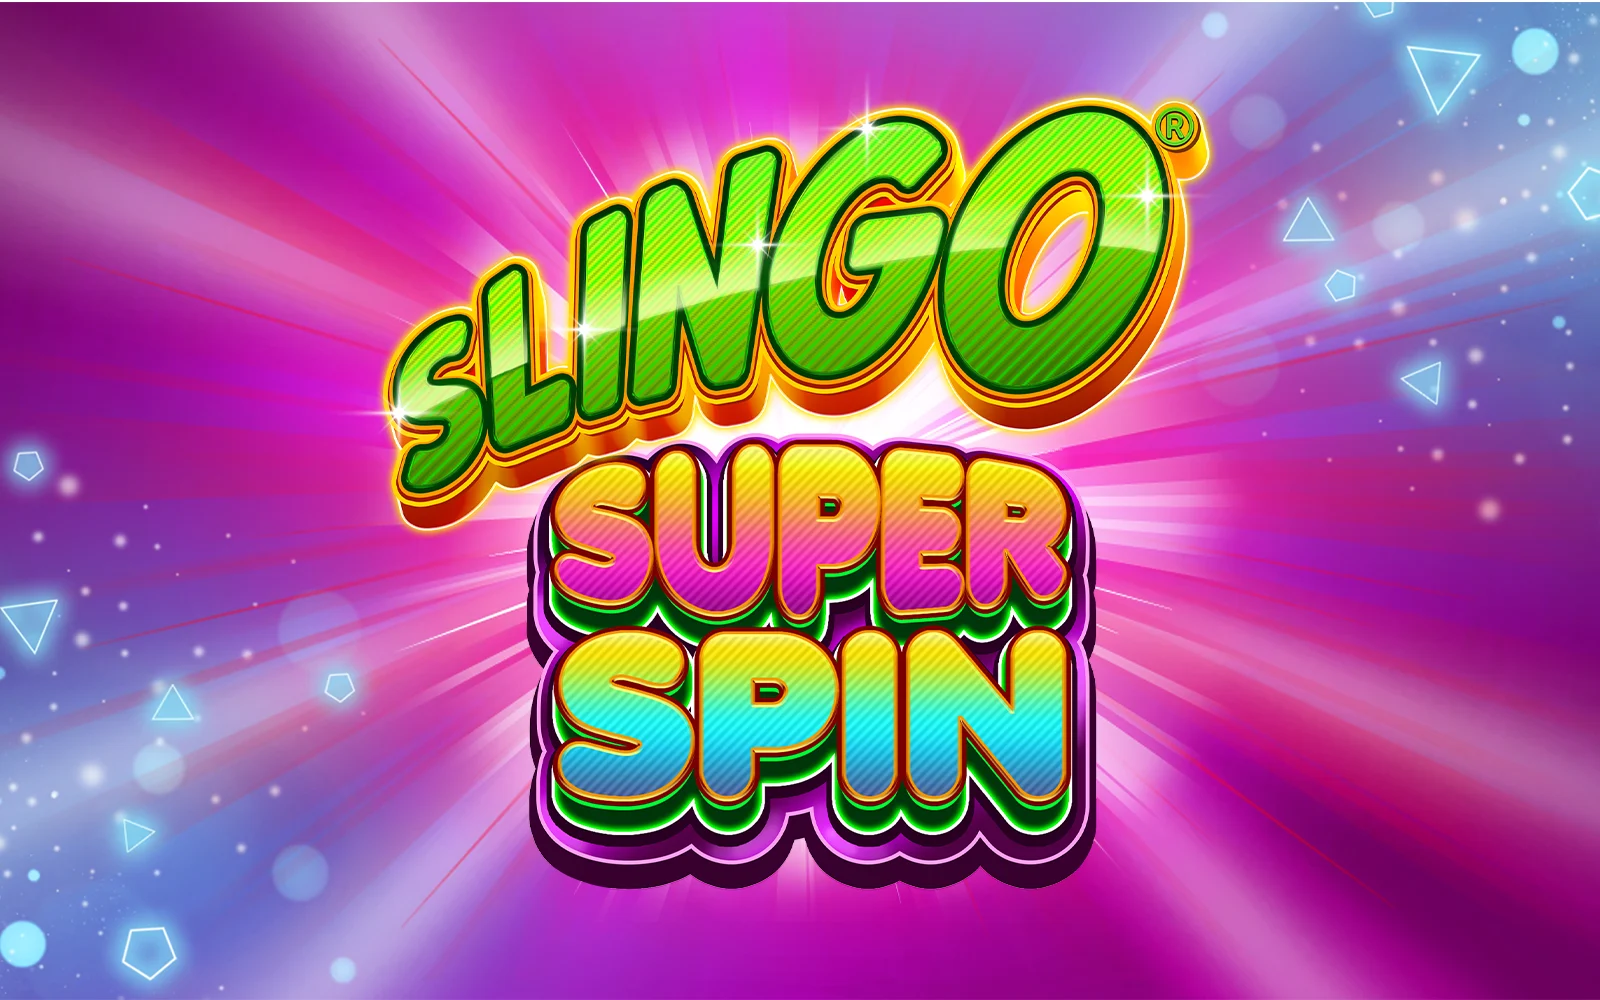 Spielen Sie Slingo Super Spin auf Starcasino.be-Online-Casino